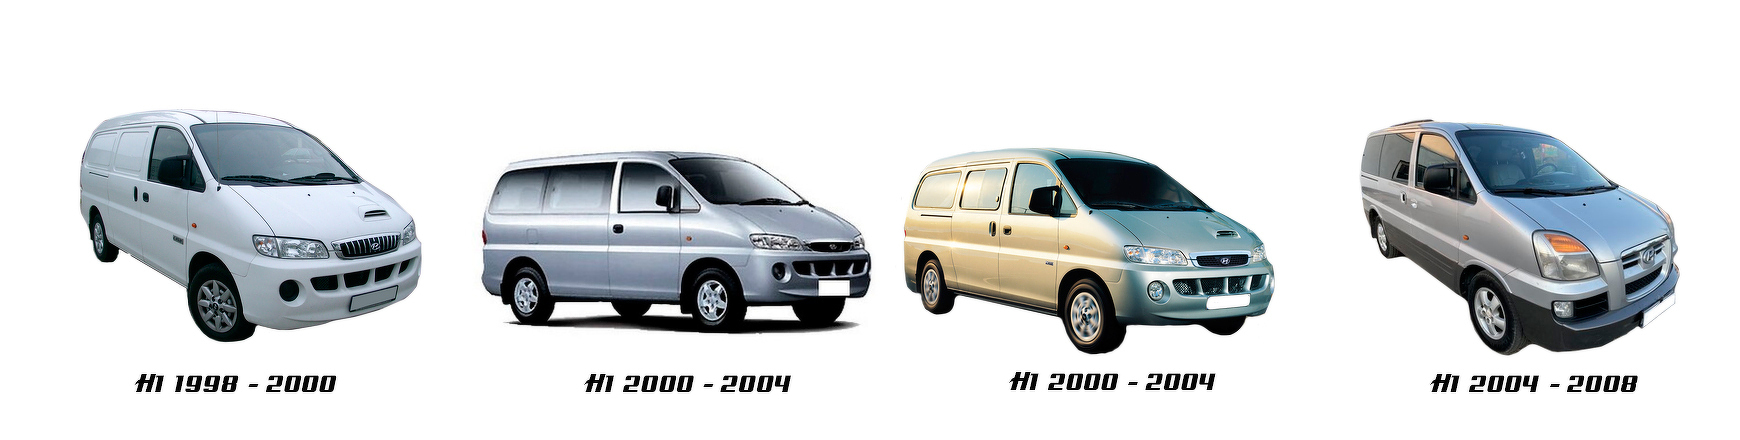 hyundai h1 furgoneta 1997 1998 1999 2000 2001 2002 2003 2004 2005